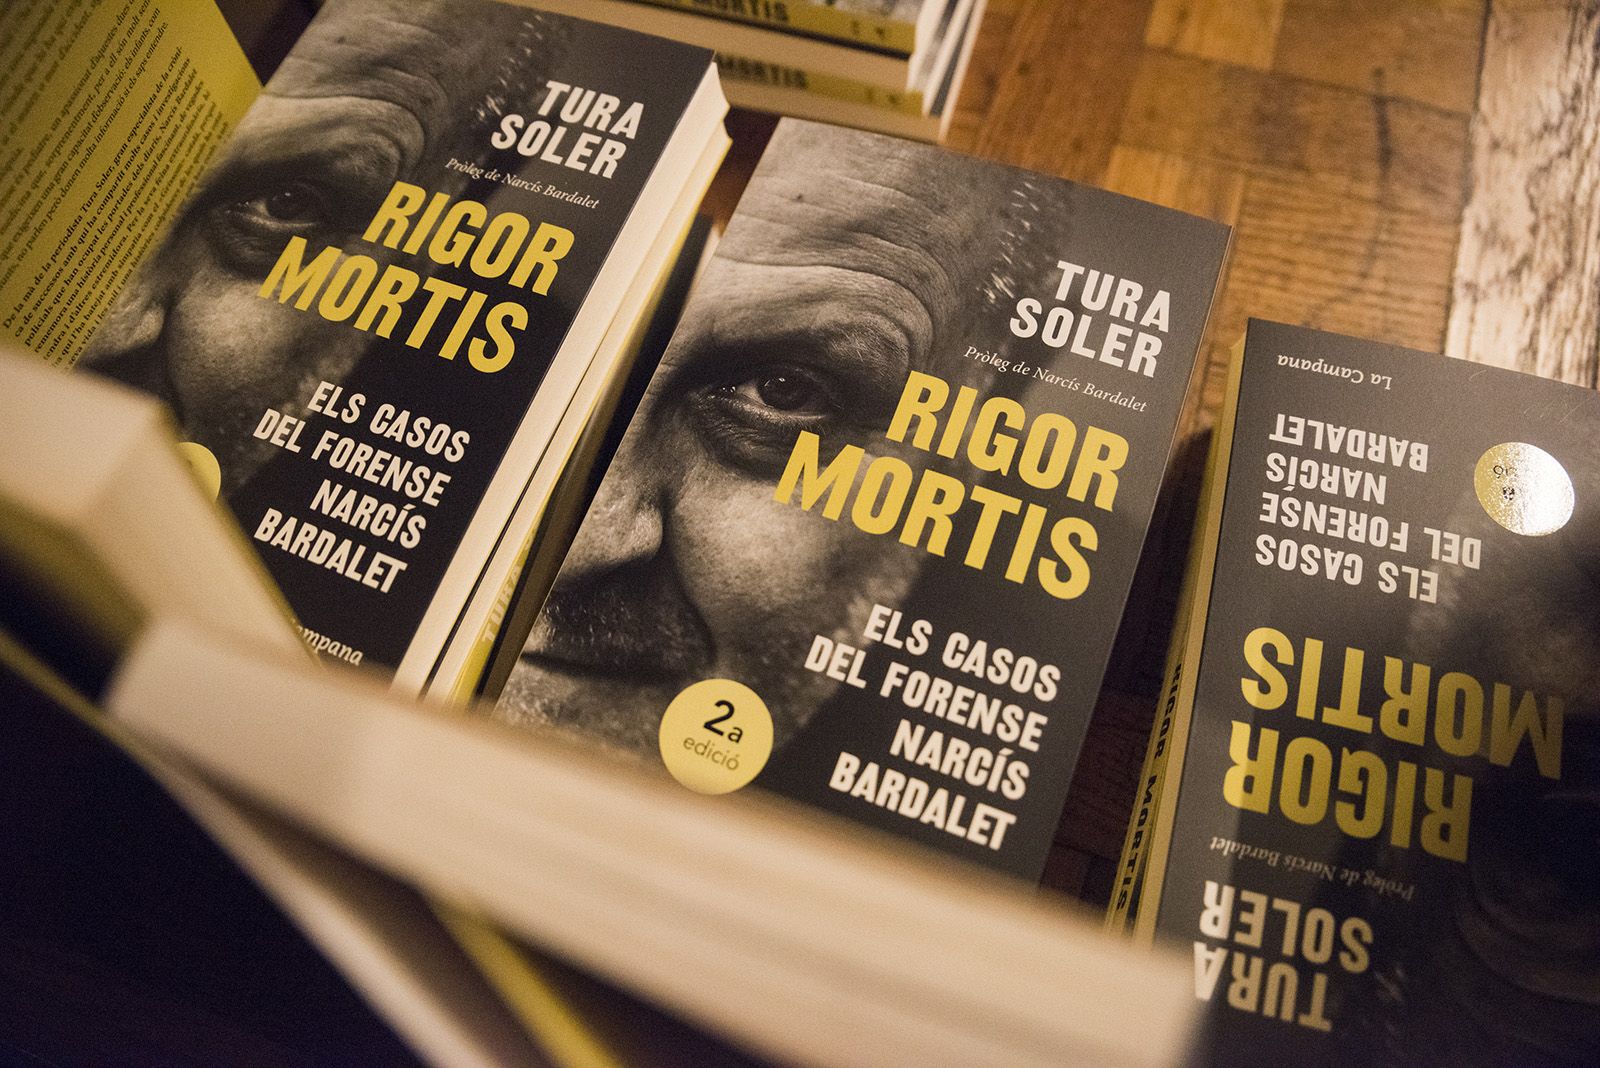 Presentació del llibre 'Rigor Mortis' de Tura Soler. FOTO: Bernat Millet.